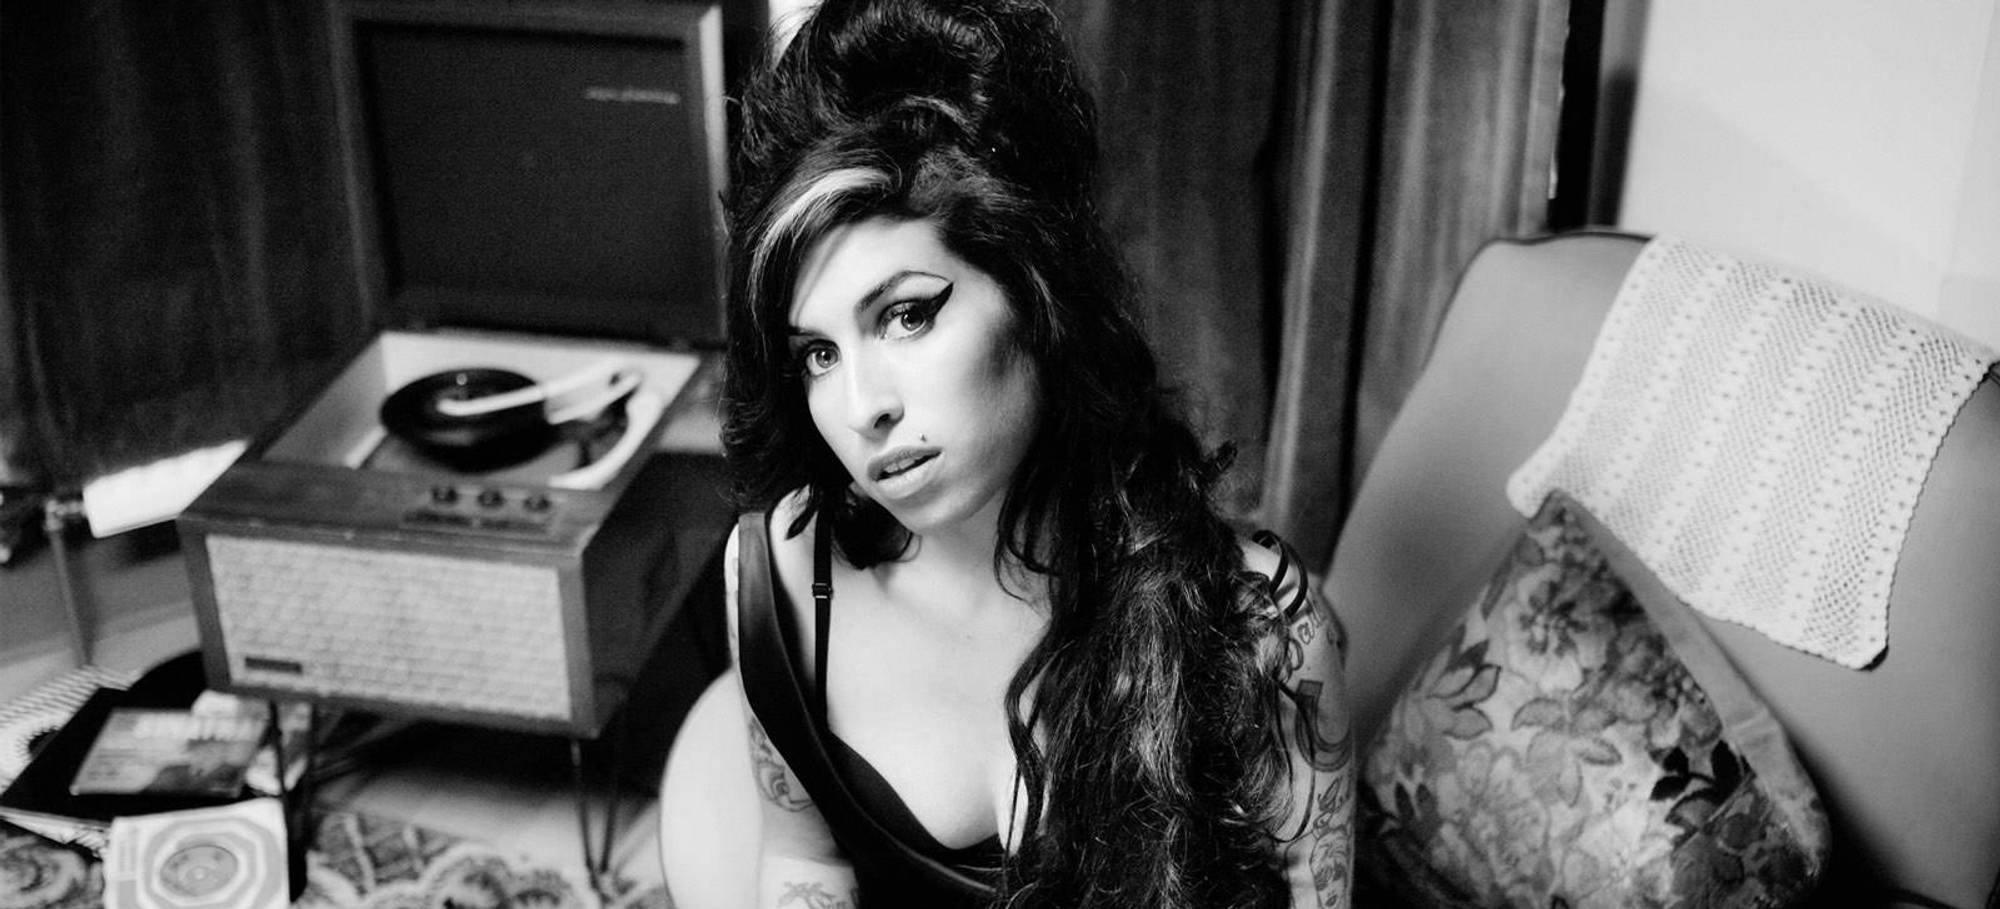 Cinema/Amy Winehouse: descubra o trailer sensual do filme biográfico